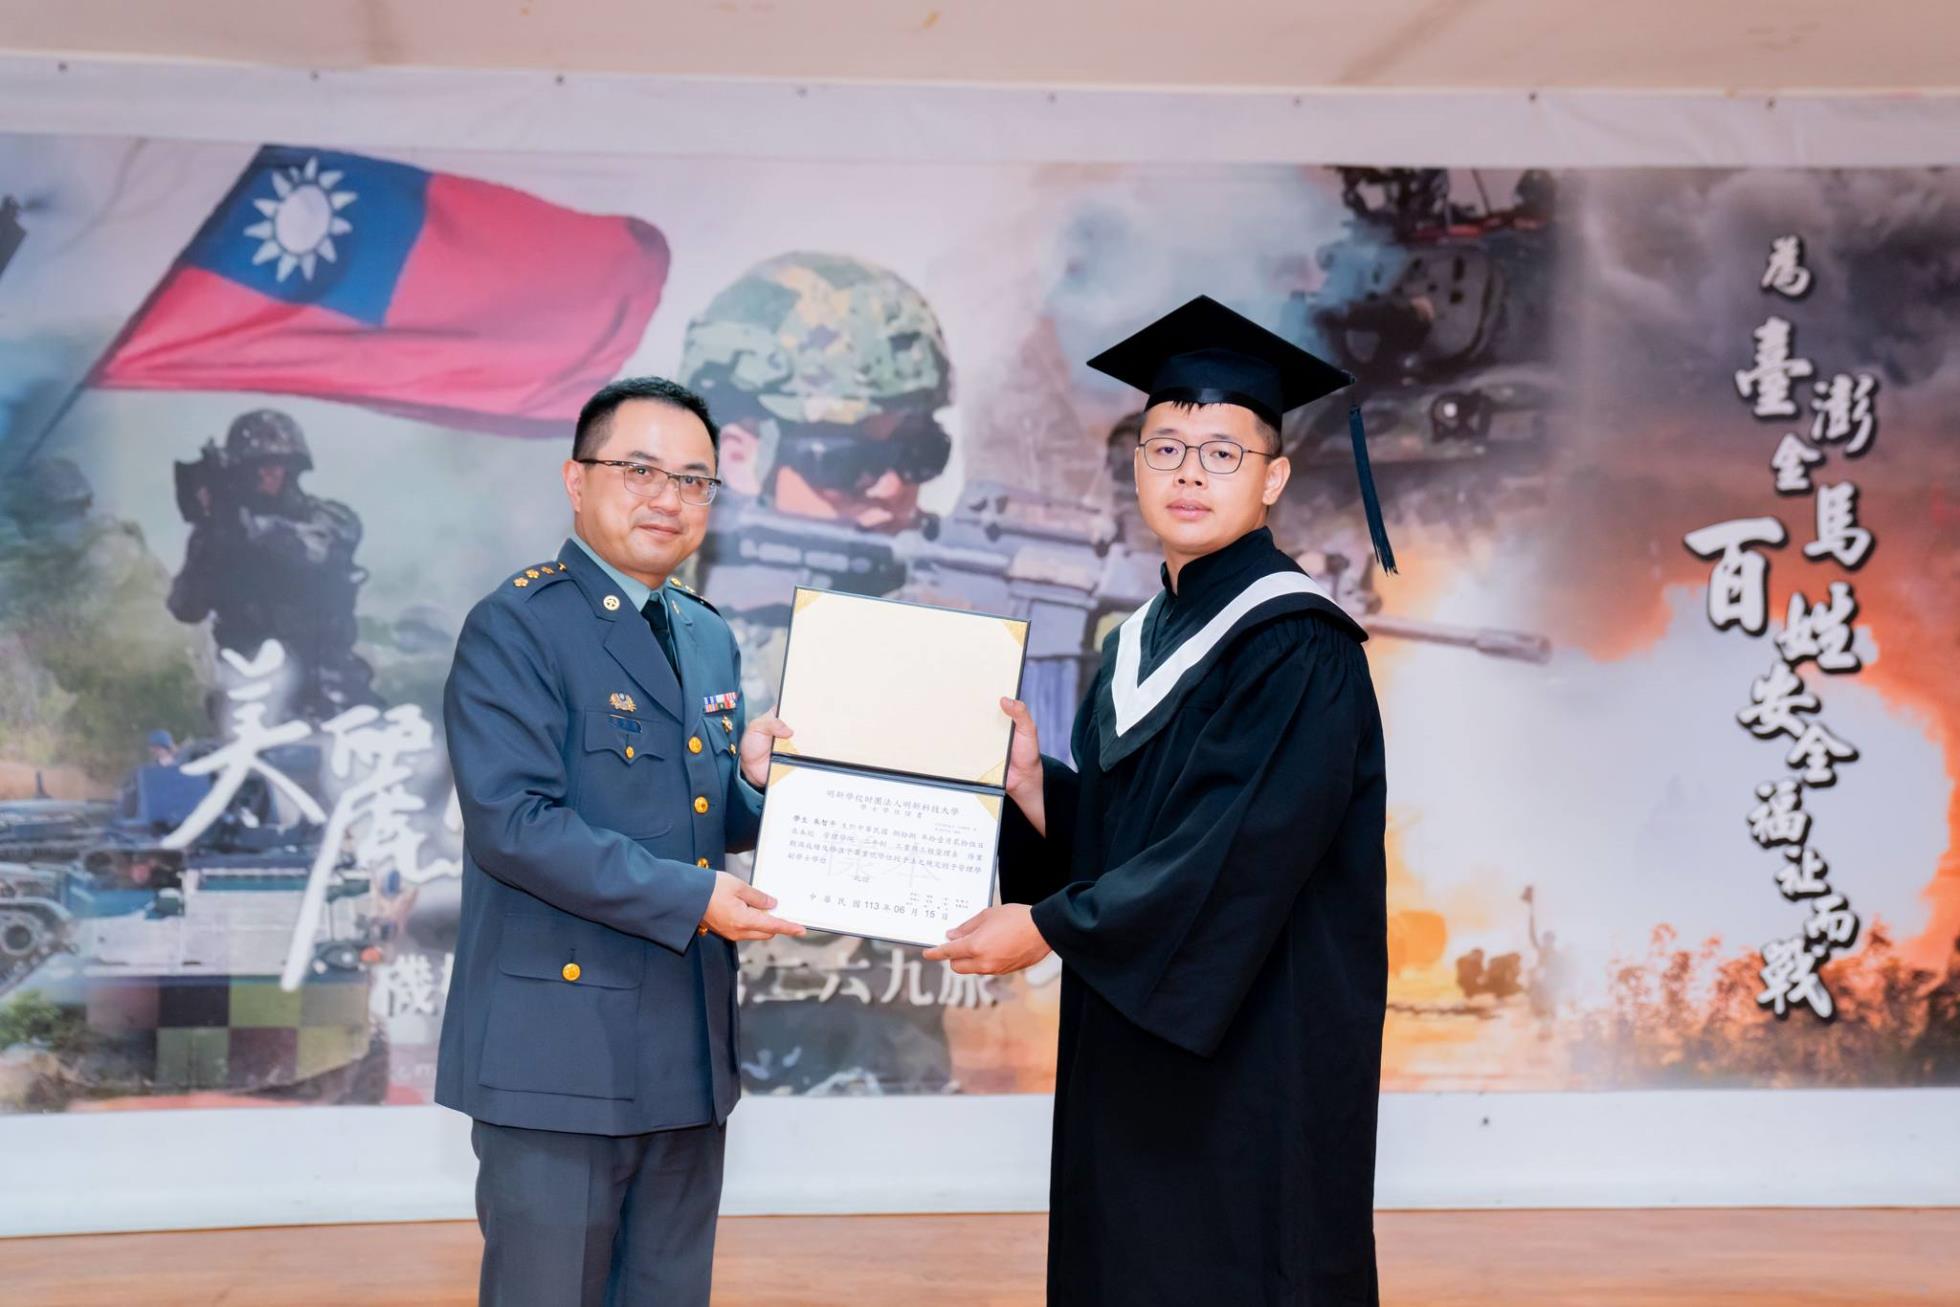 033陸軍269旅副旅長張上校頒發畢業證書予畢業生朱智平同學